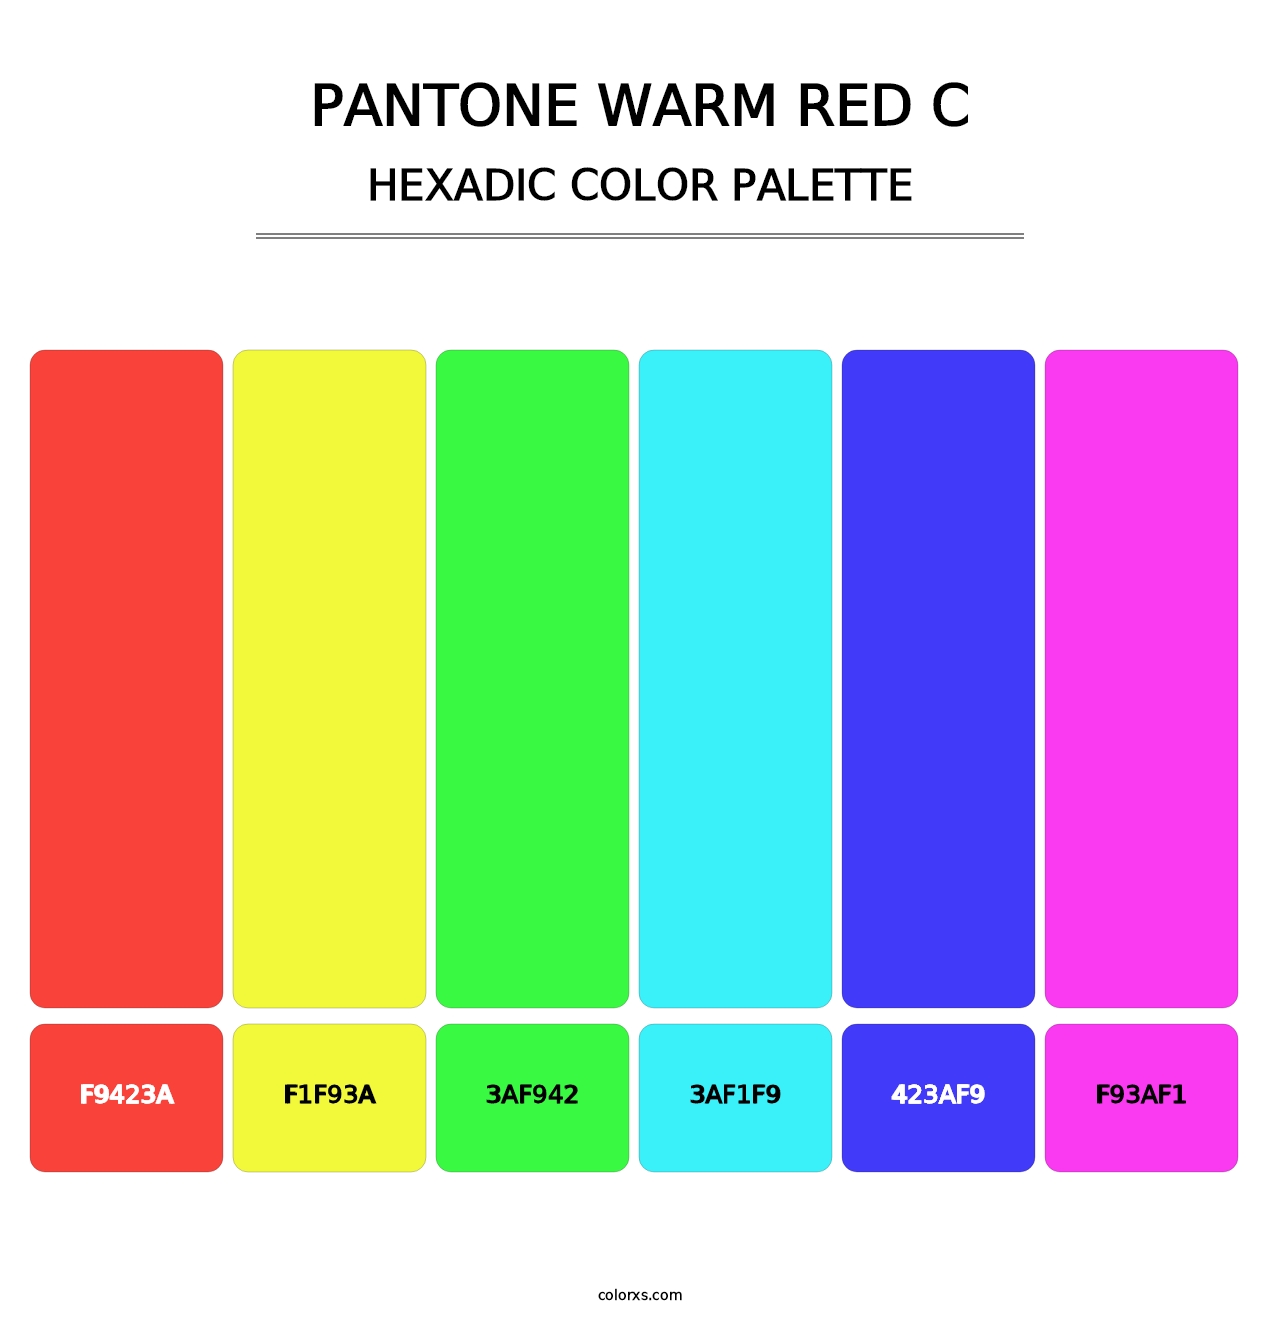 PANTONE Warm Red C - Hexadic Color Palette